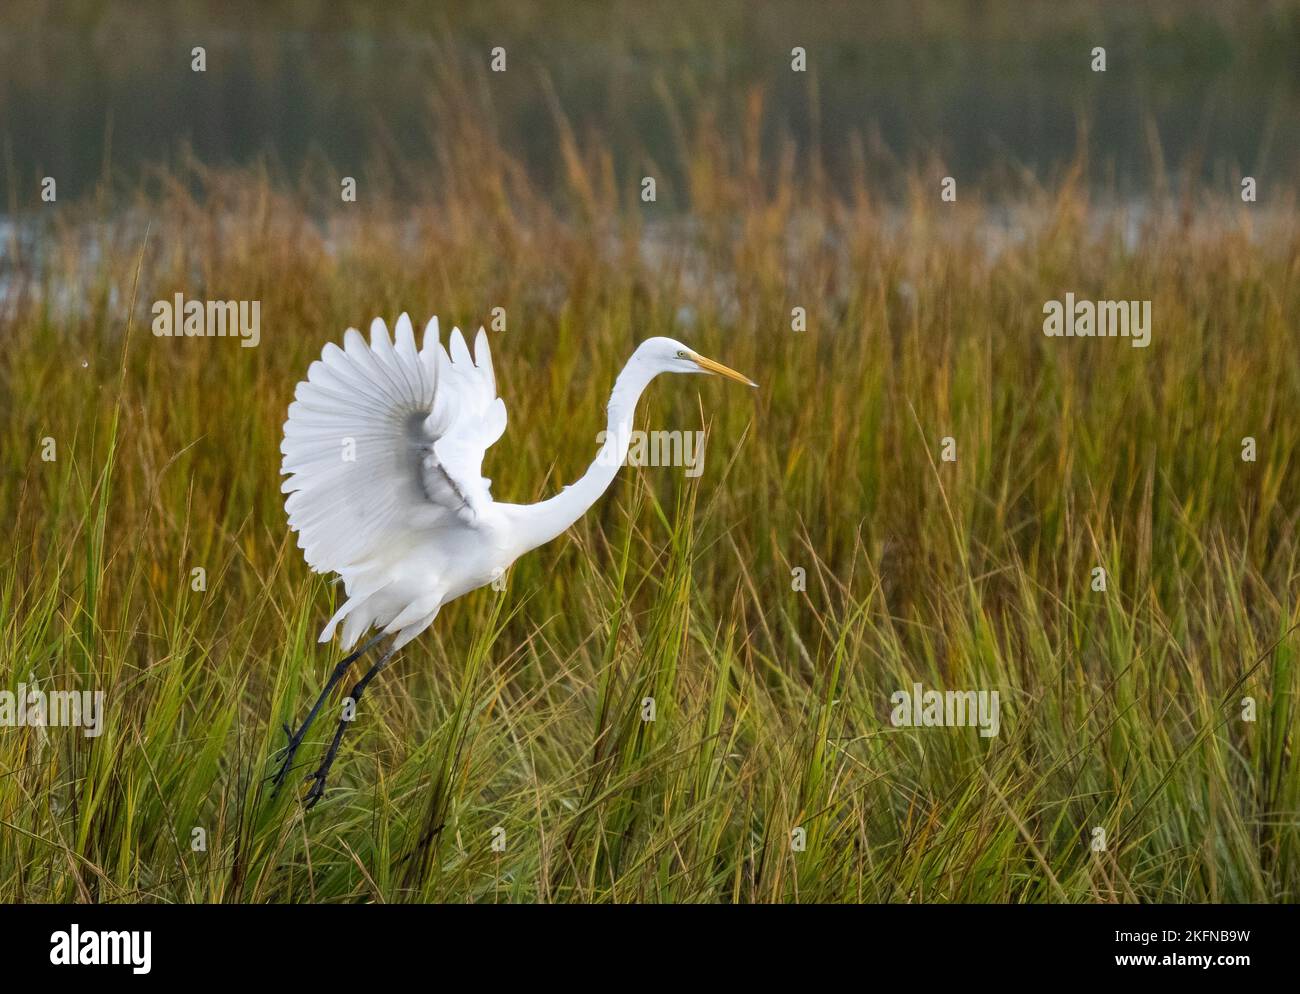 Great Egret (Ardea alba) landing in marsh grasses Stock Photo